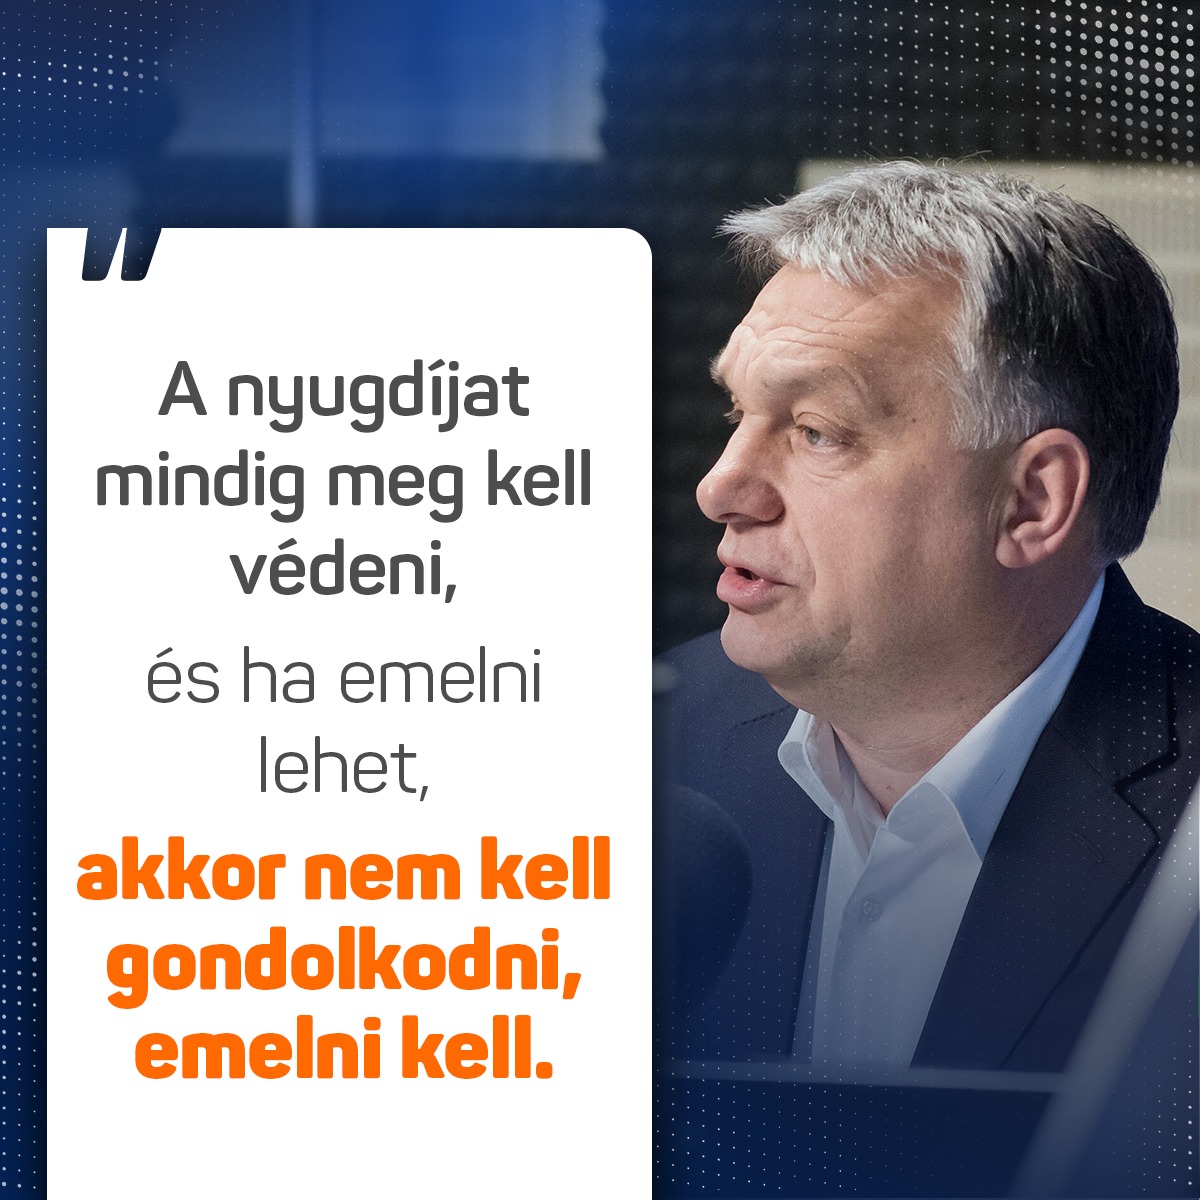 A nyugdíj az nálam sosem alku vagy vita kérdése. Ma nem lennénk ott, ahol vagyunk, ha ők nem végezték volna el a munkájukat. ﻿A nyugdíjasokat mindig meg kell védeni – mondta Orbán Viktor.